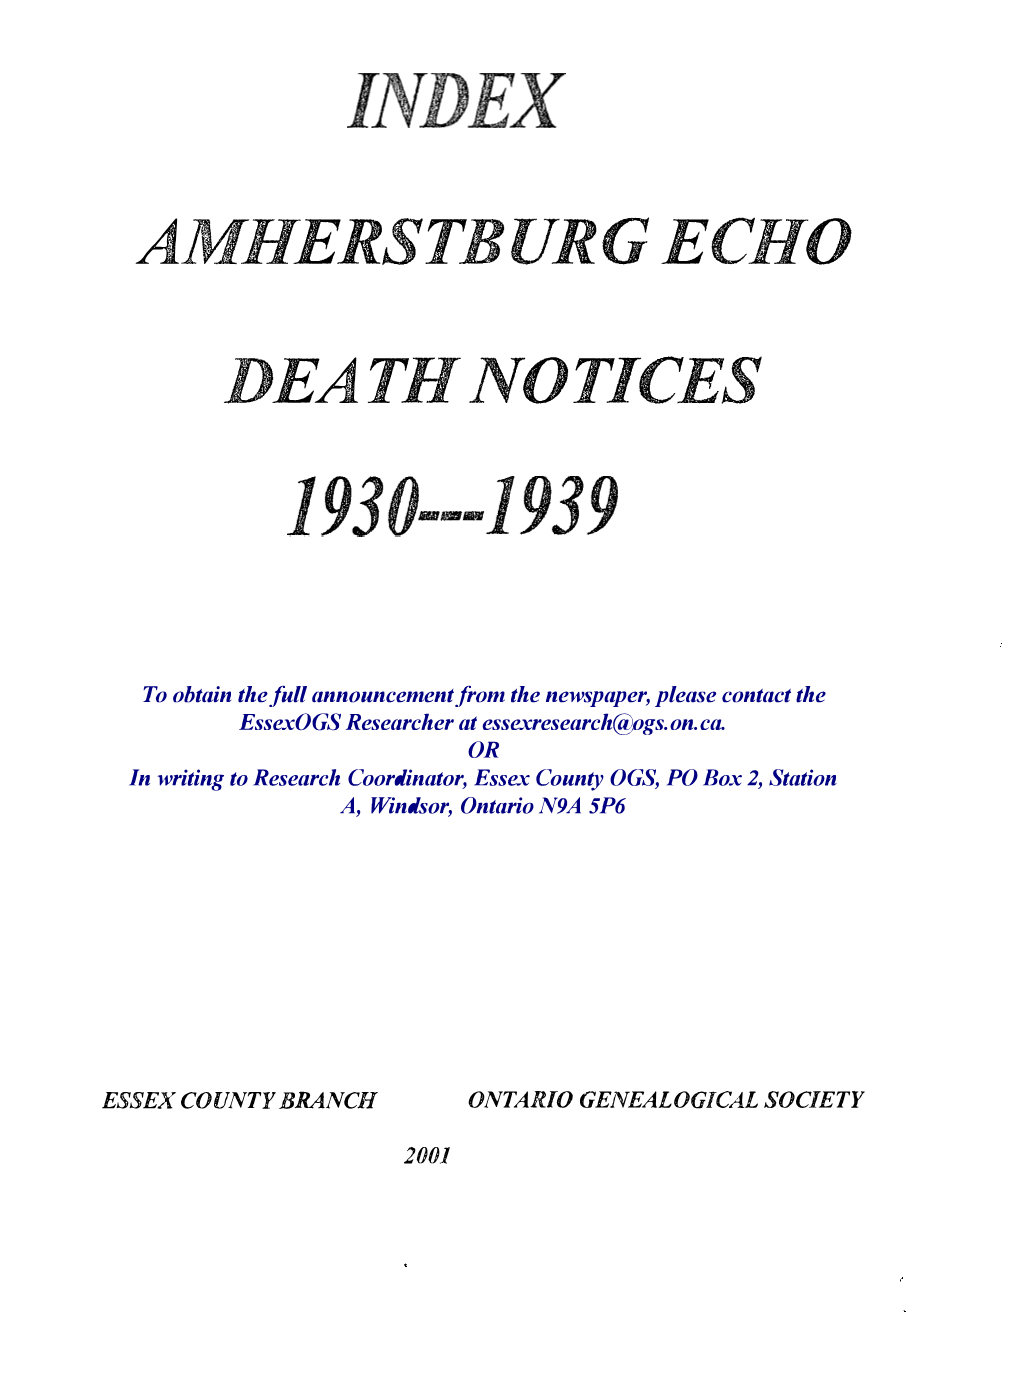 Amherstburg Echo Death Notices 1930-1939